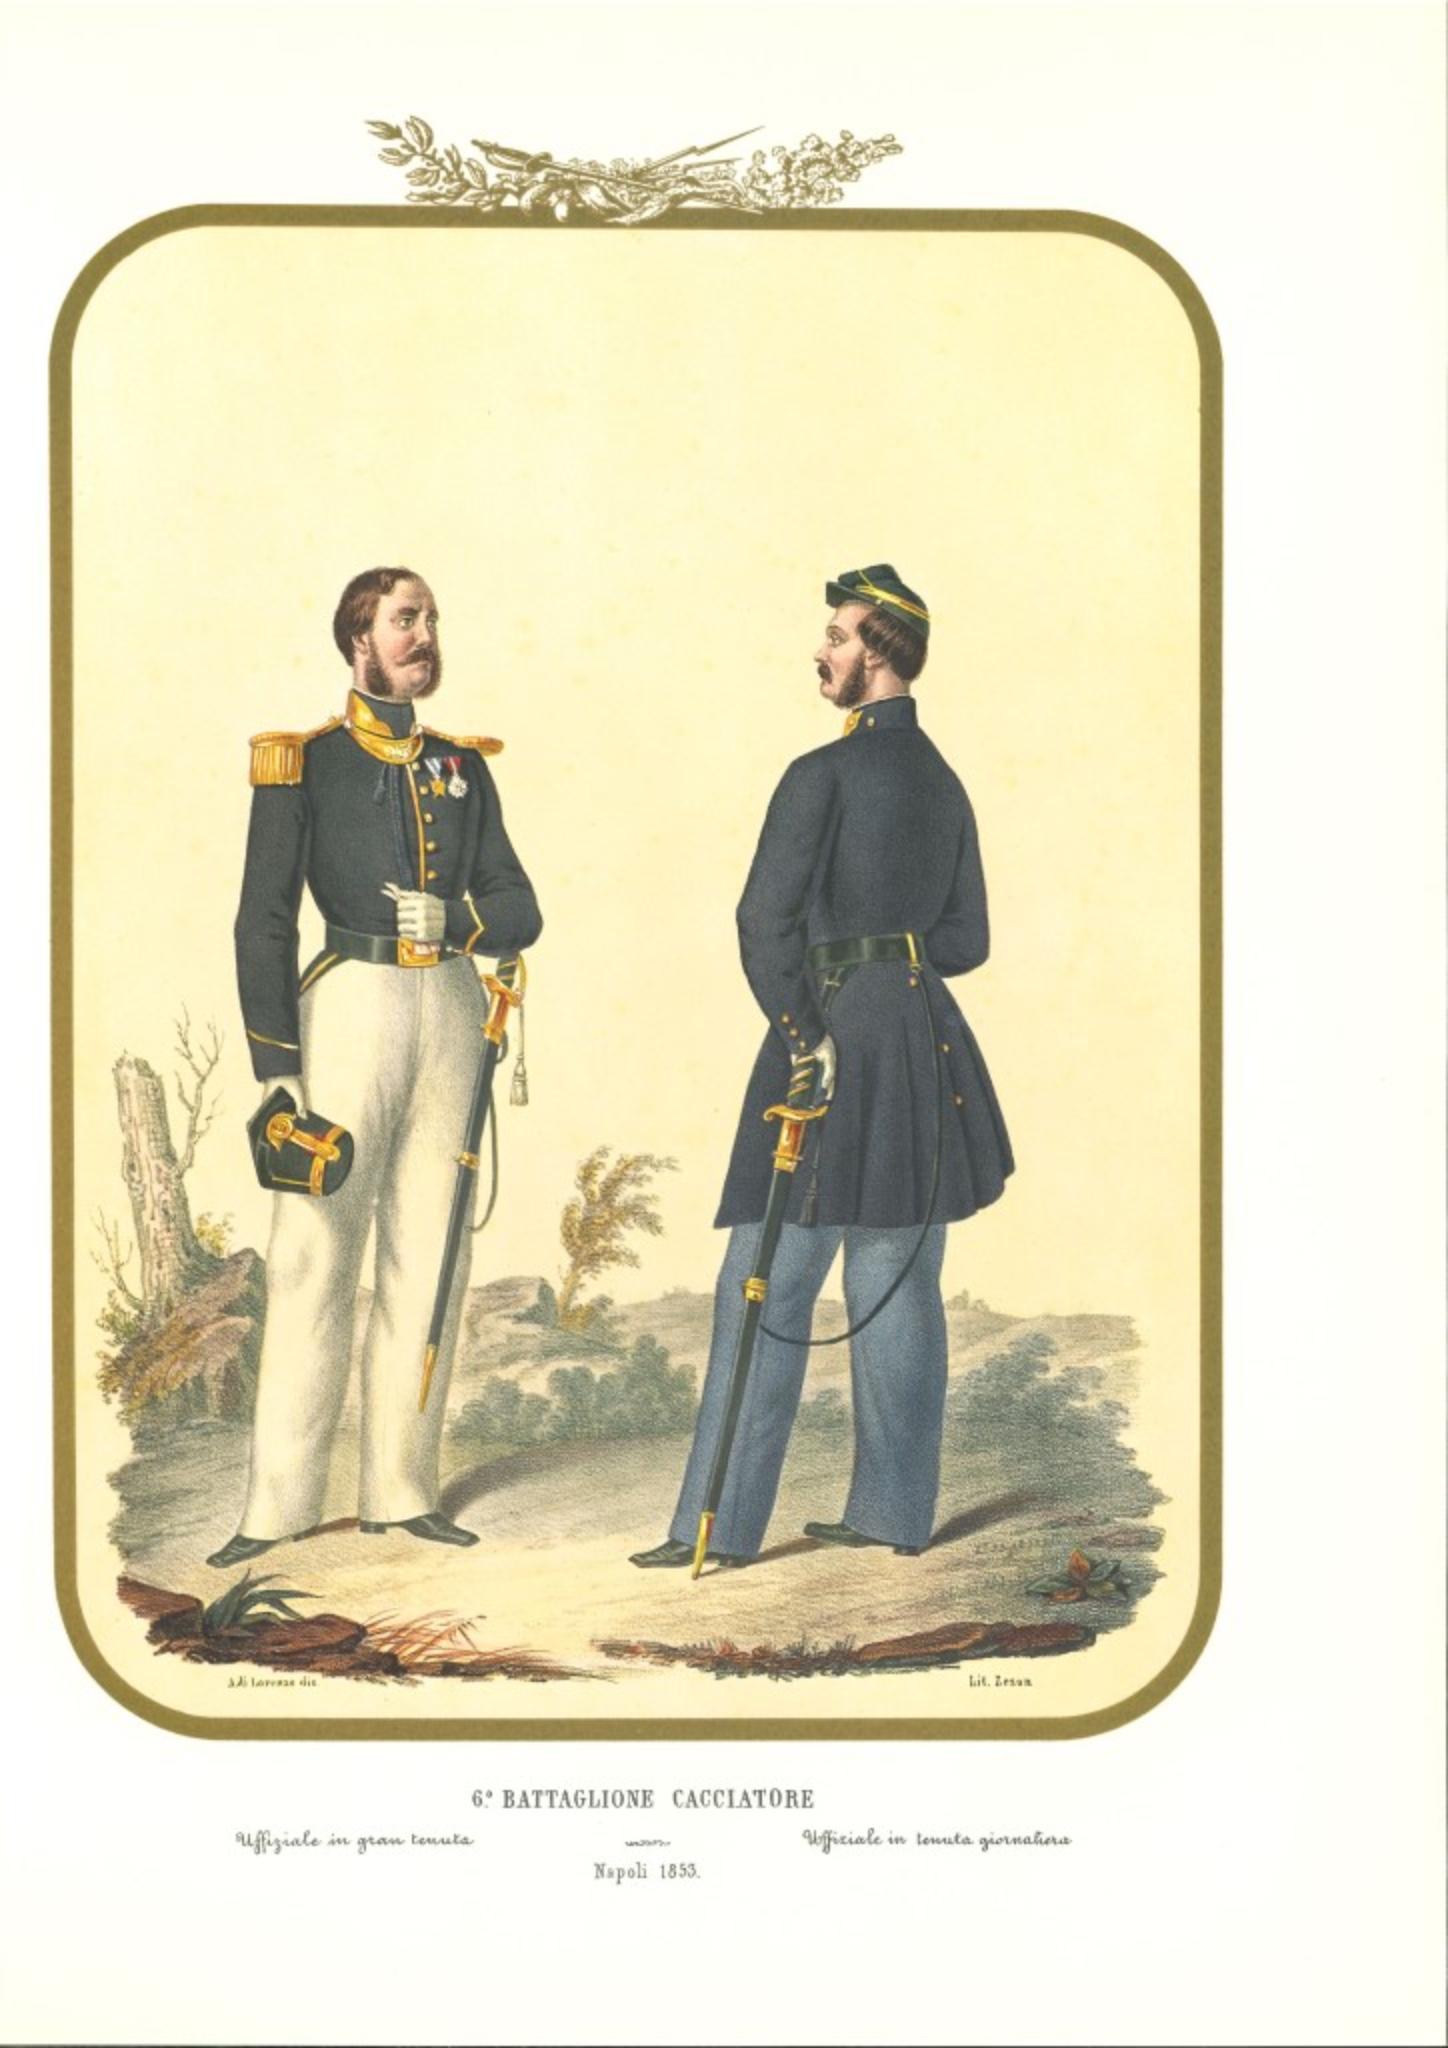 VI Hunter Battalion ist eine Original-Lithografie von Antonio Zezon. Neapel 1853.

Interessante Farblithografie, die einige Mitglieder des Jägerbataillons beschreibt:  Beamter in Ausgehuniform - Beamter in Alltagskleidung

Dieses Blatt ist in